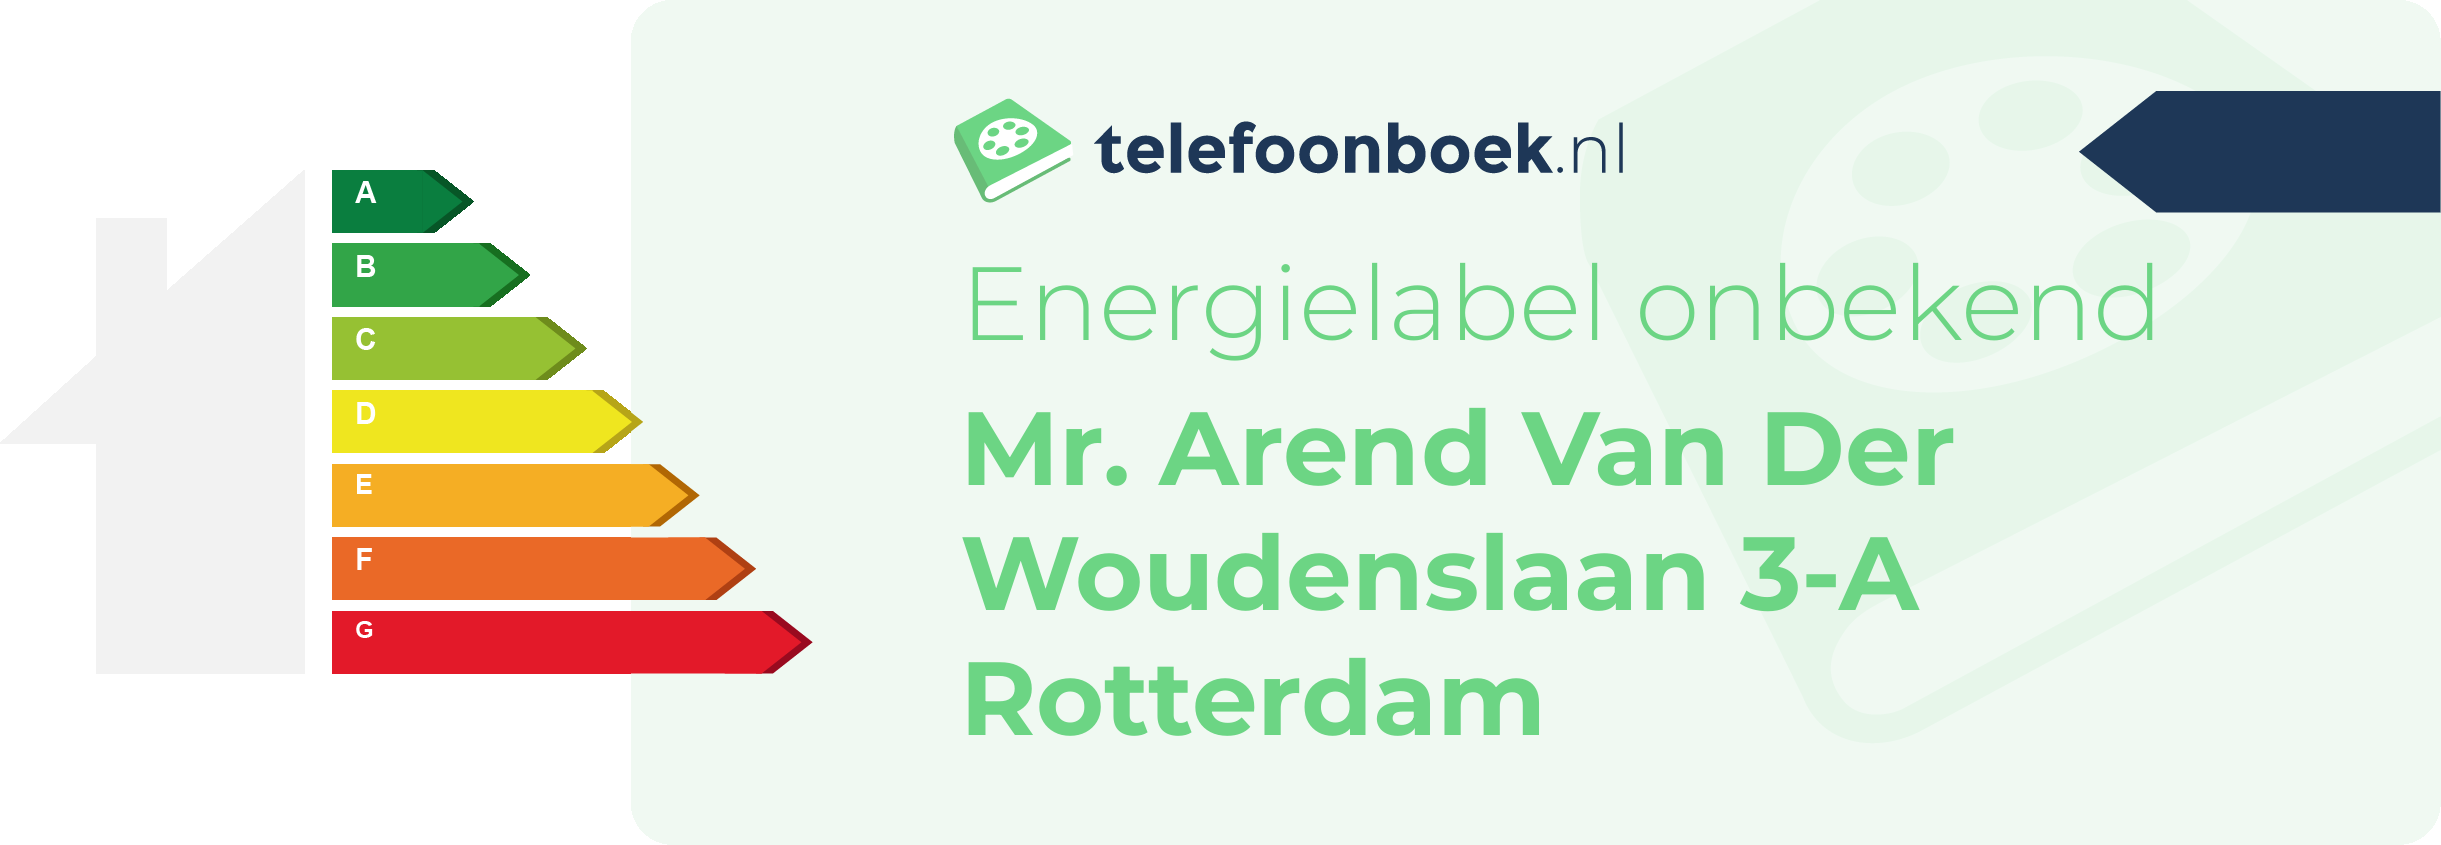 Energielabel Mr. Arend Van Der Woudenslaan 3-A Rotterdam